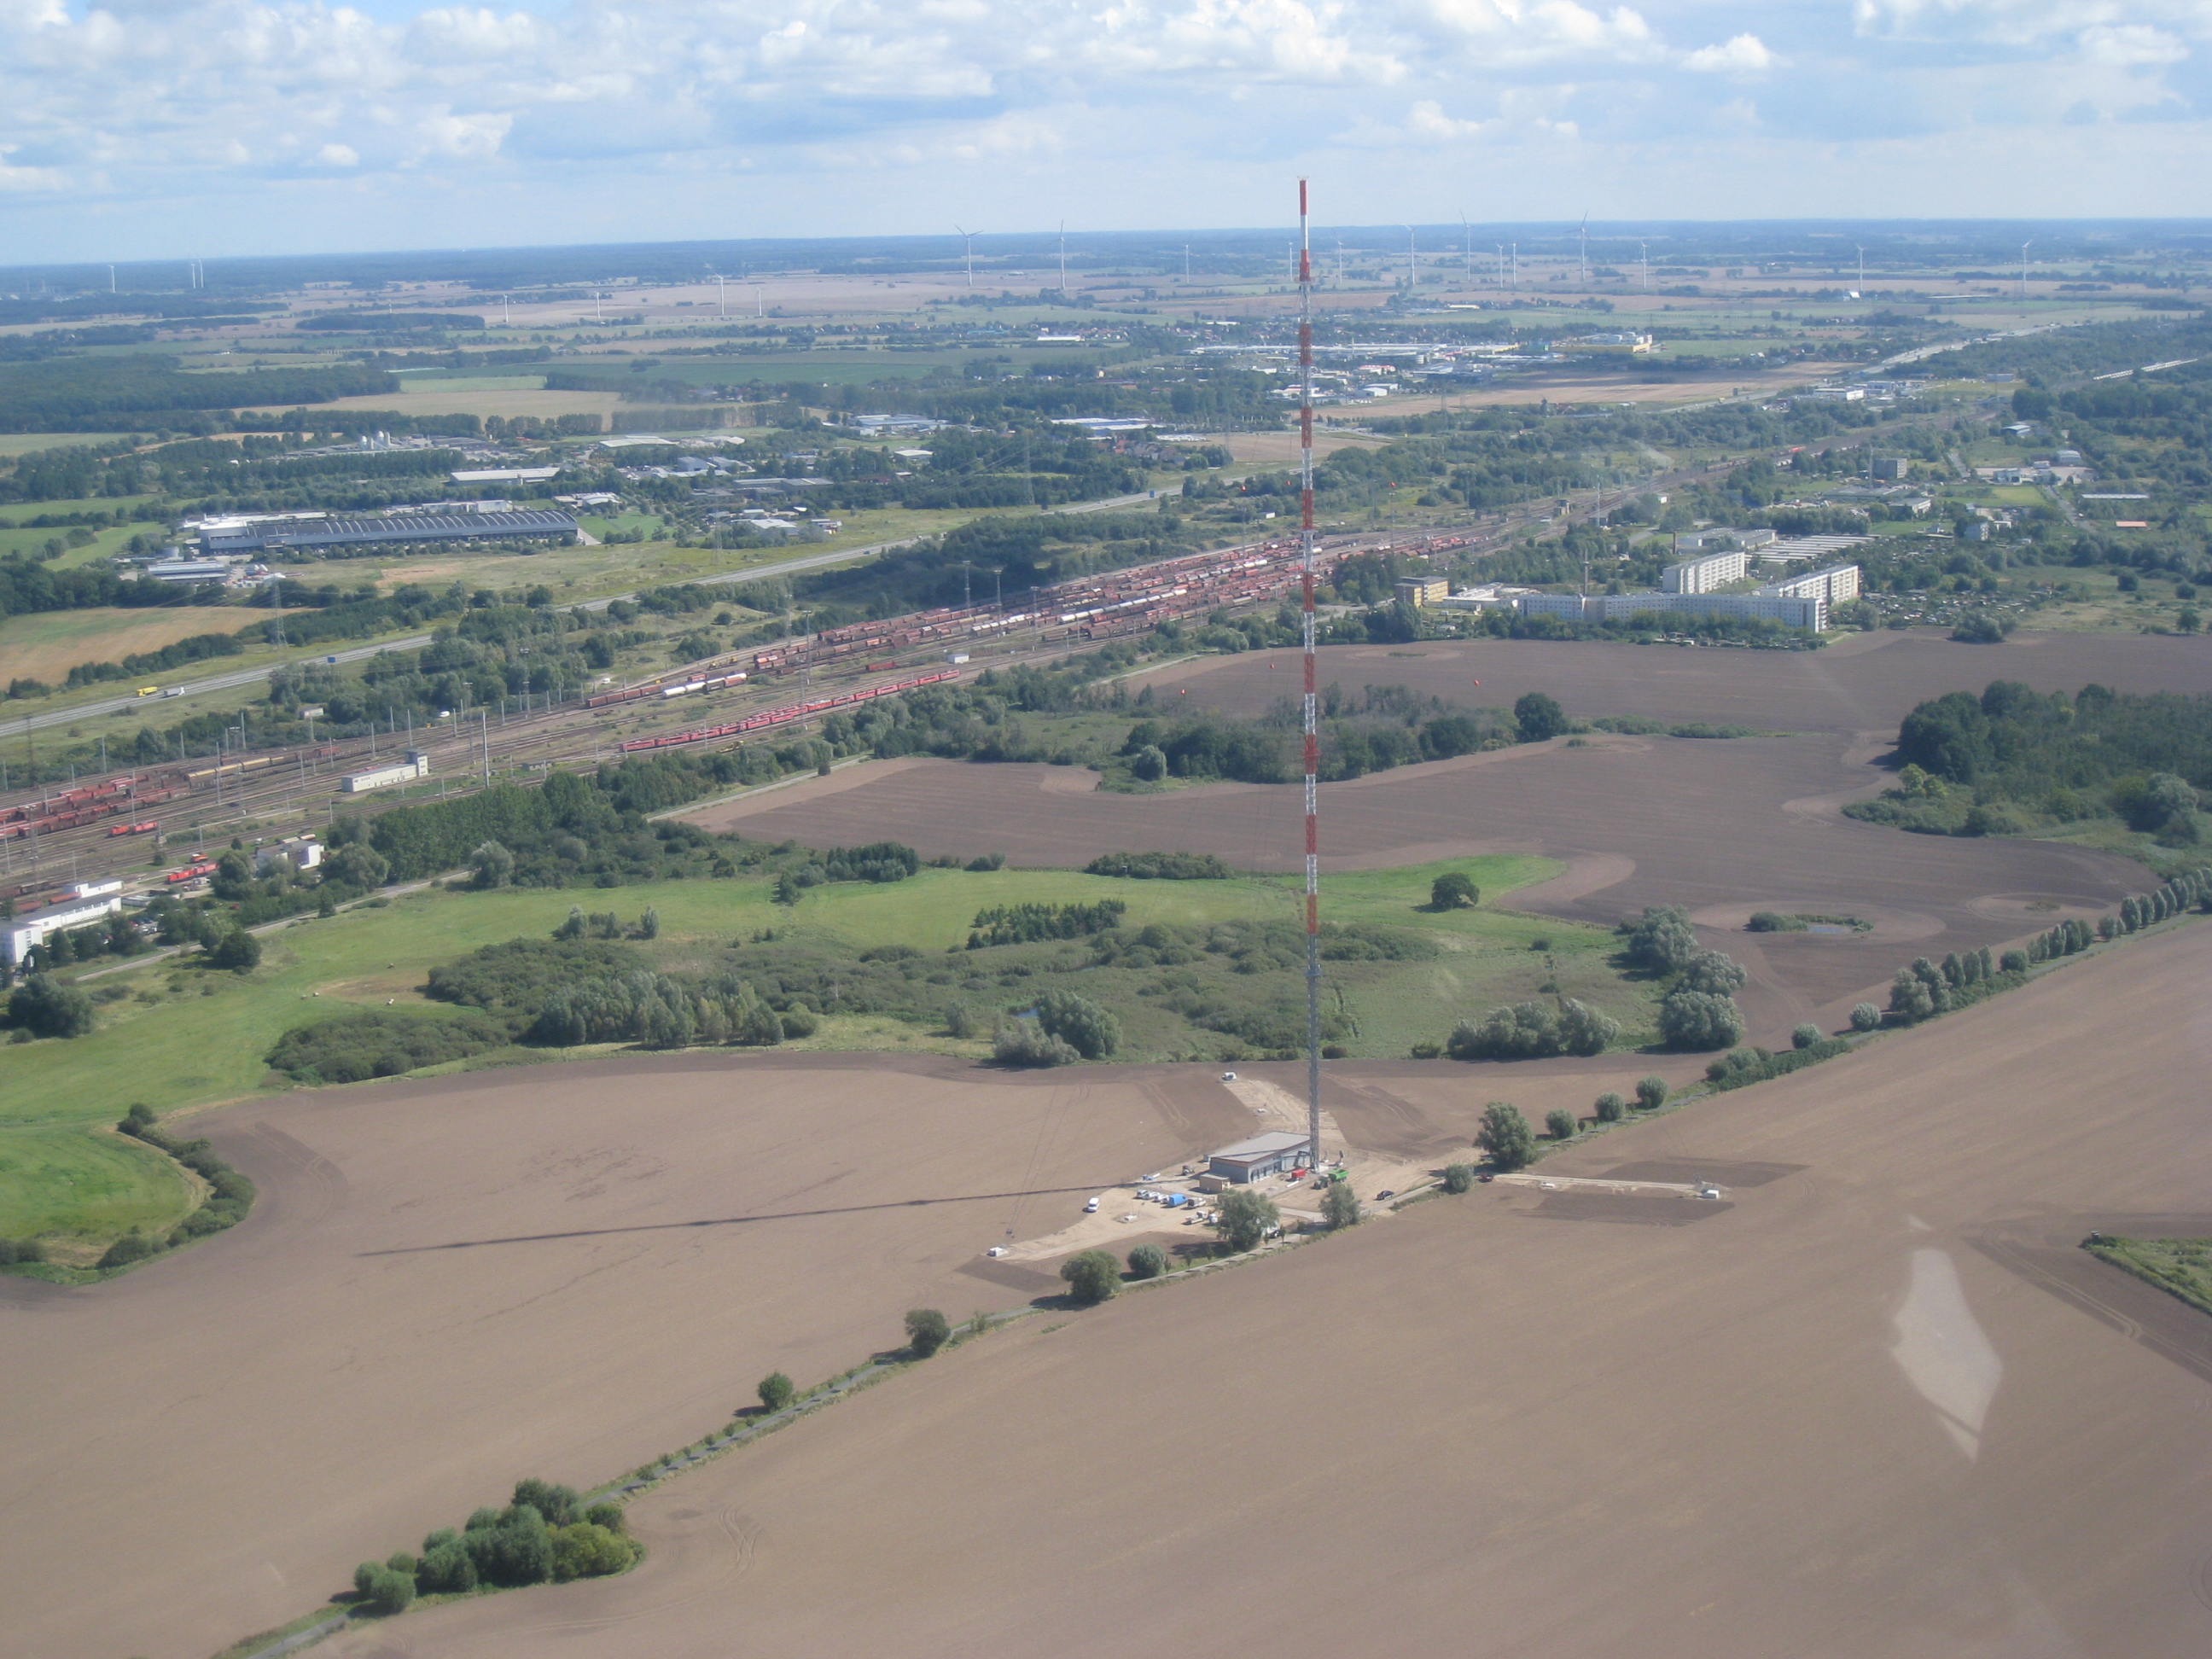 Der im September 2014 eingeweihte Senderstandort in Rostock-Toitenwinkel sendet seit 1.9.2014 auch die Digitalradio-Programme des bundesweiten Programmangebotes aus. Damit ist auch die beliebte Ostsee-Urlaubsregion mit Digitalradio versorgt. Bildquelle: Deutsche Telekom